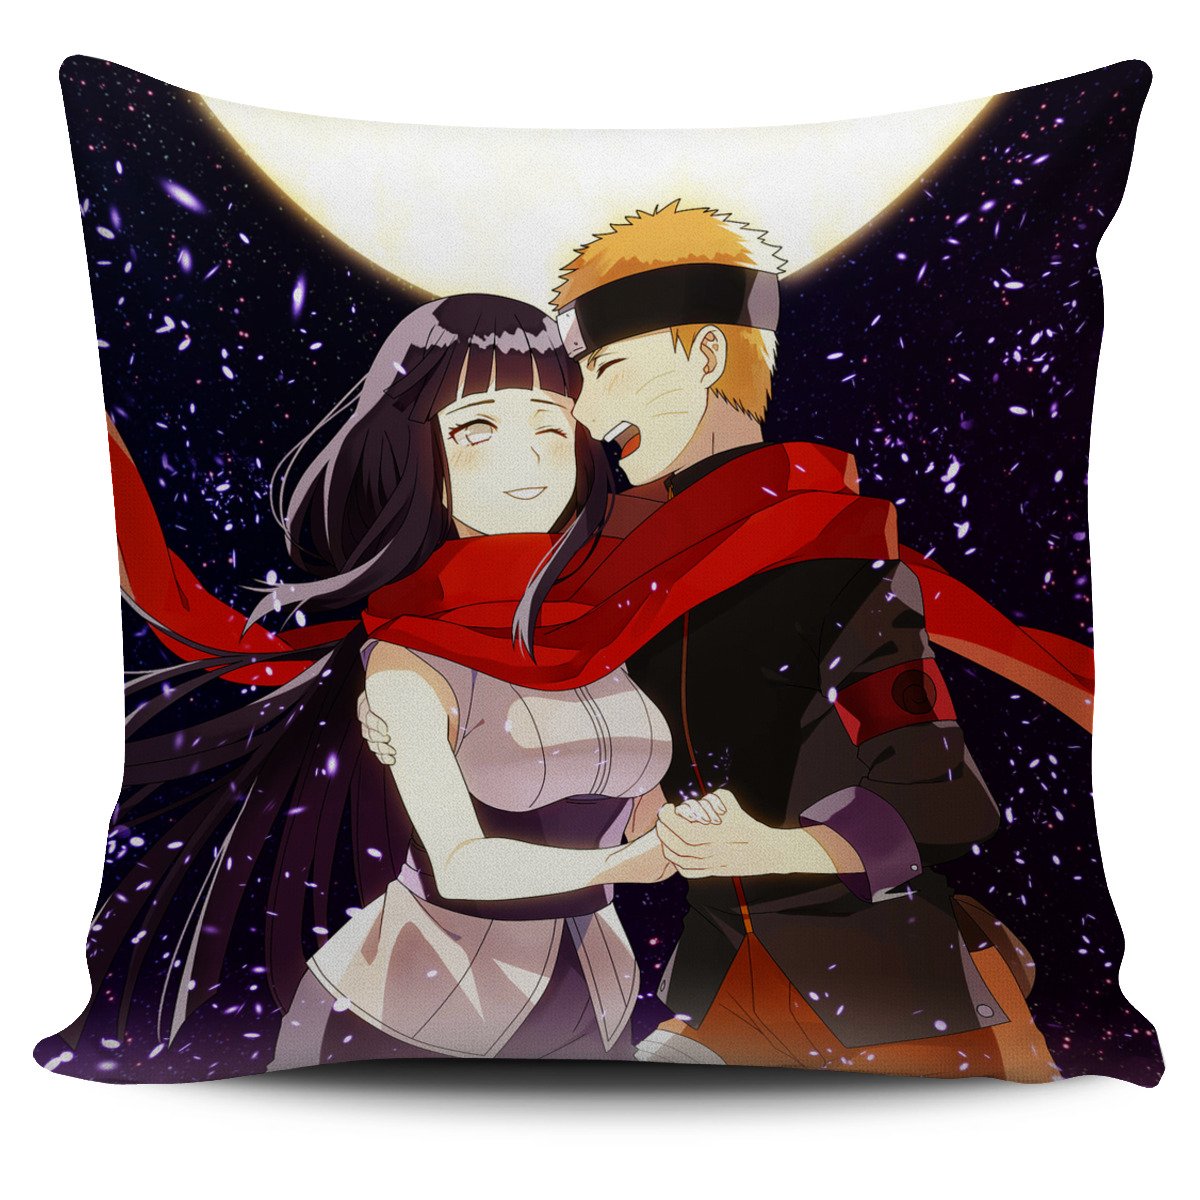 Naruto Hinata Pillow Cover